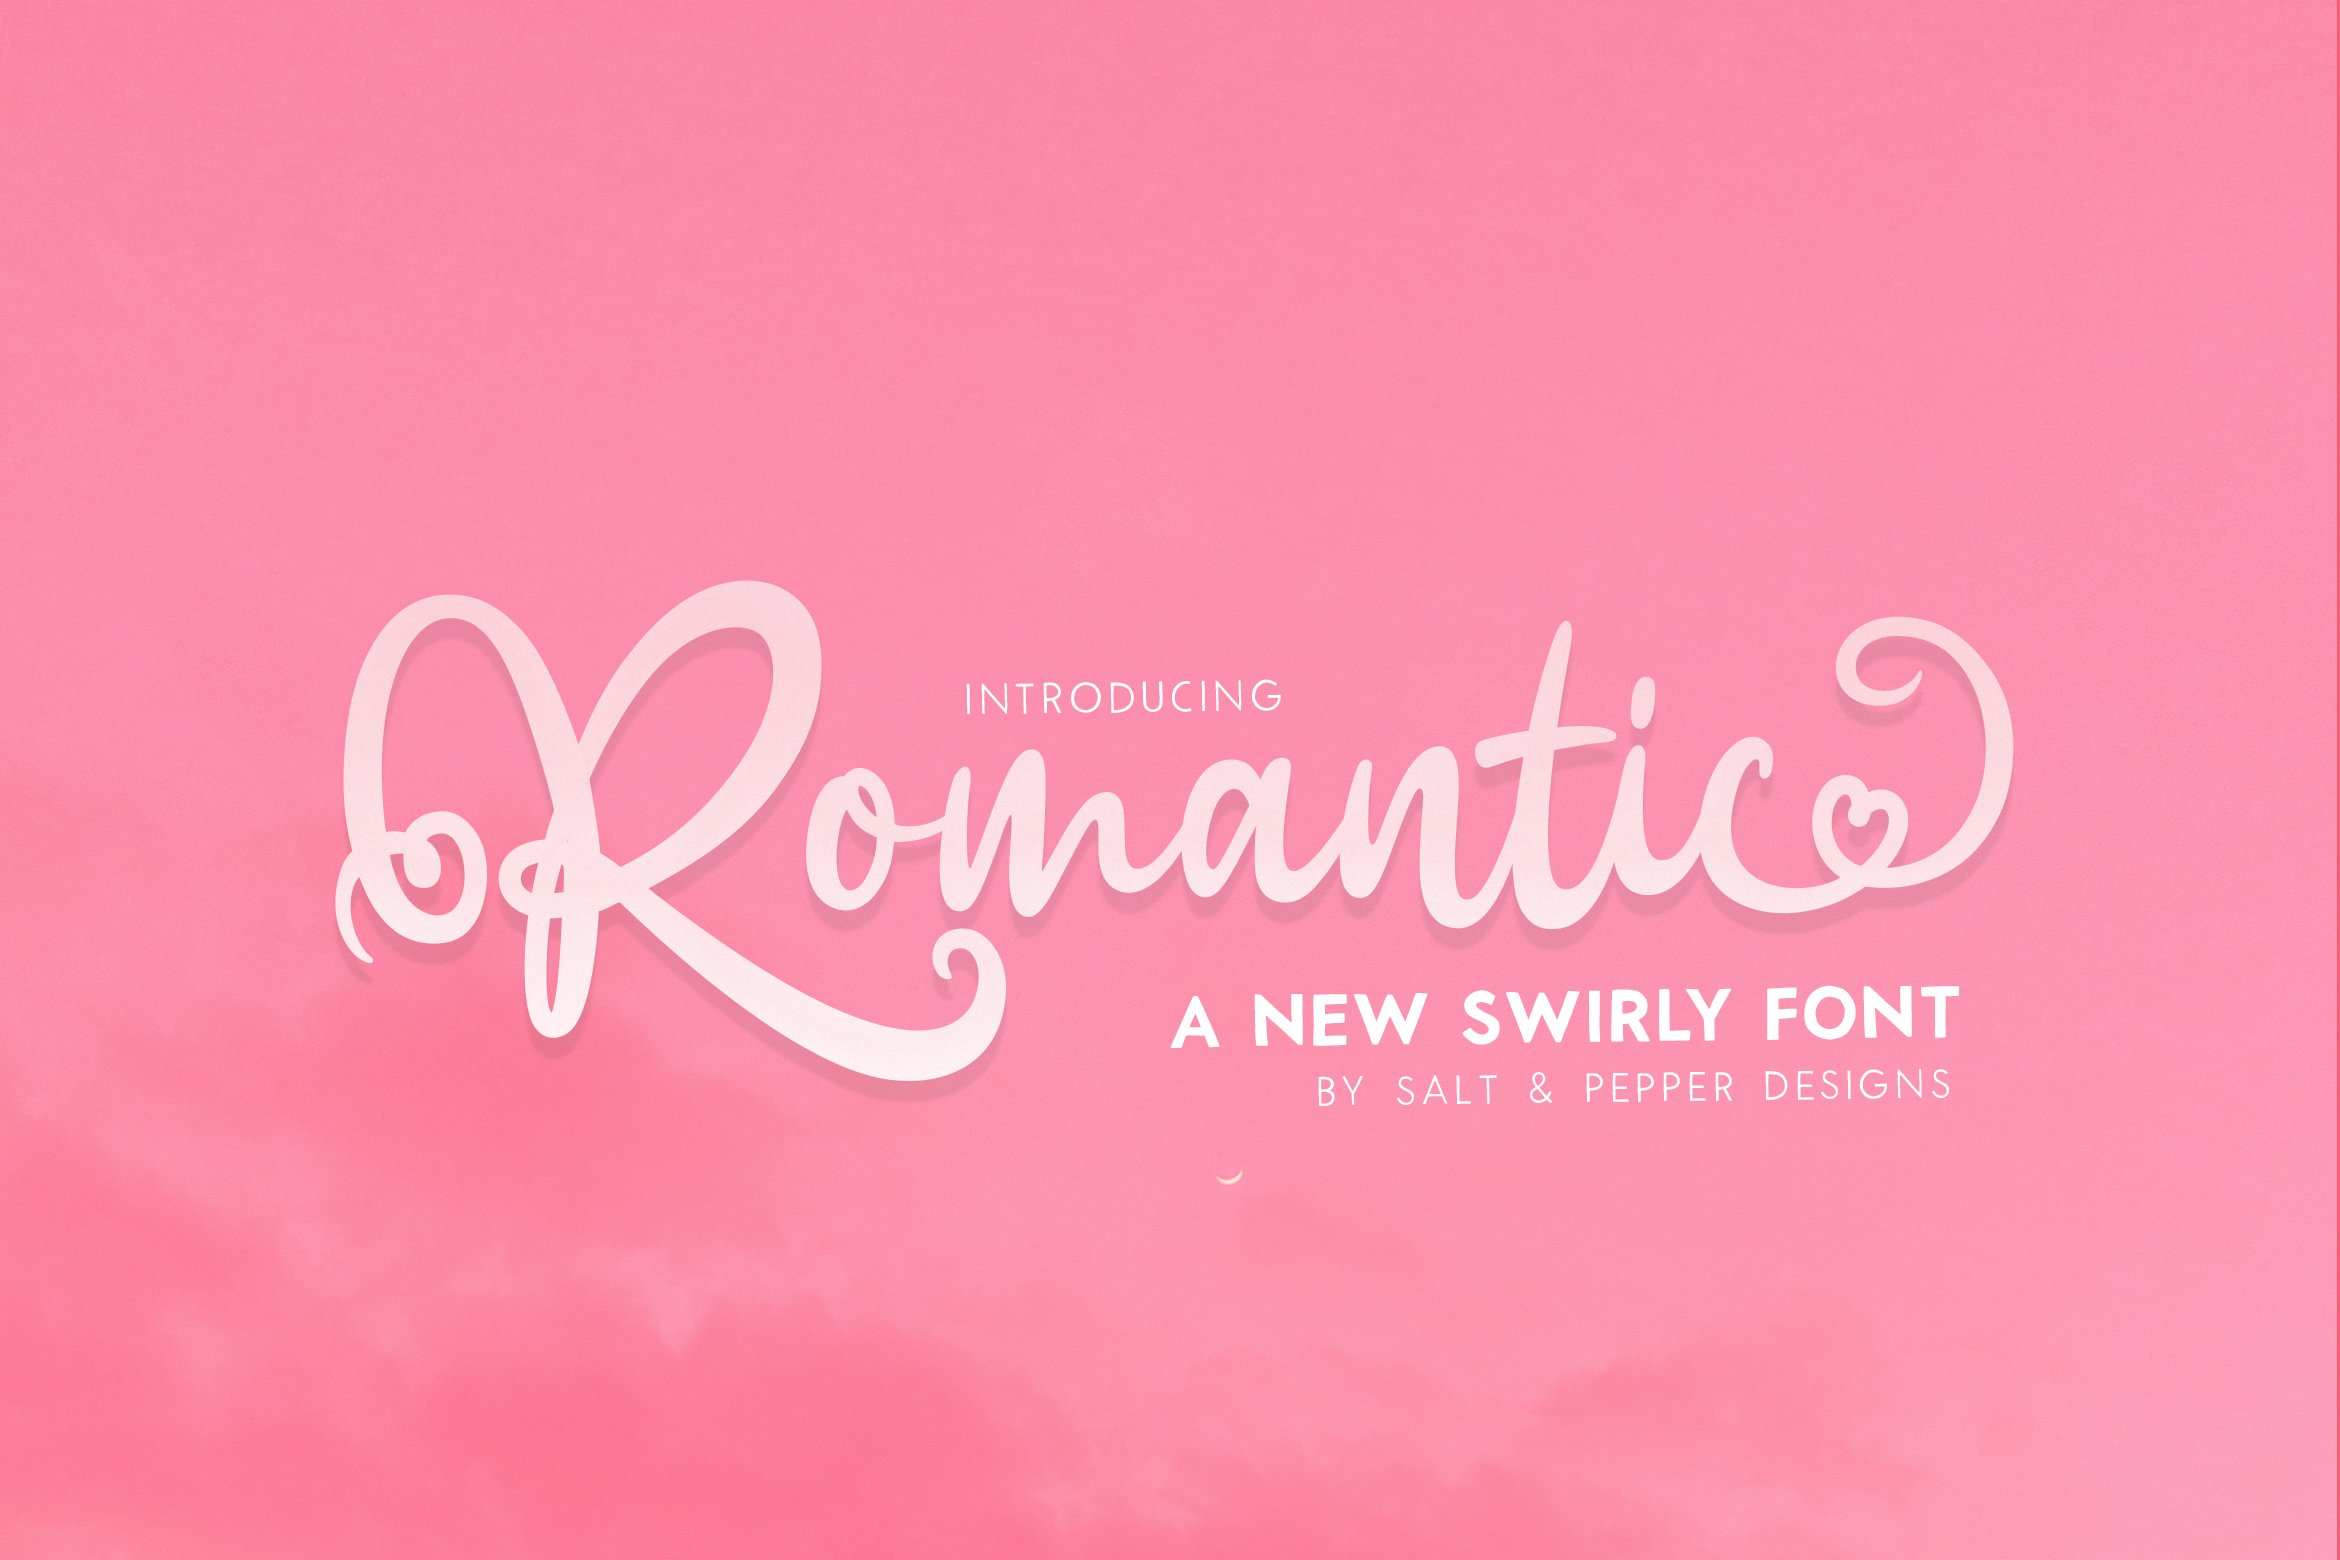 Romantic Script Font cover image.